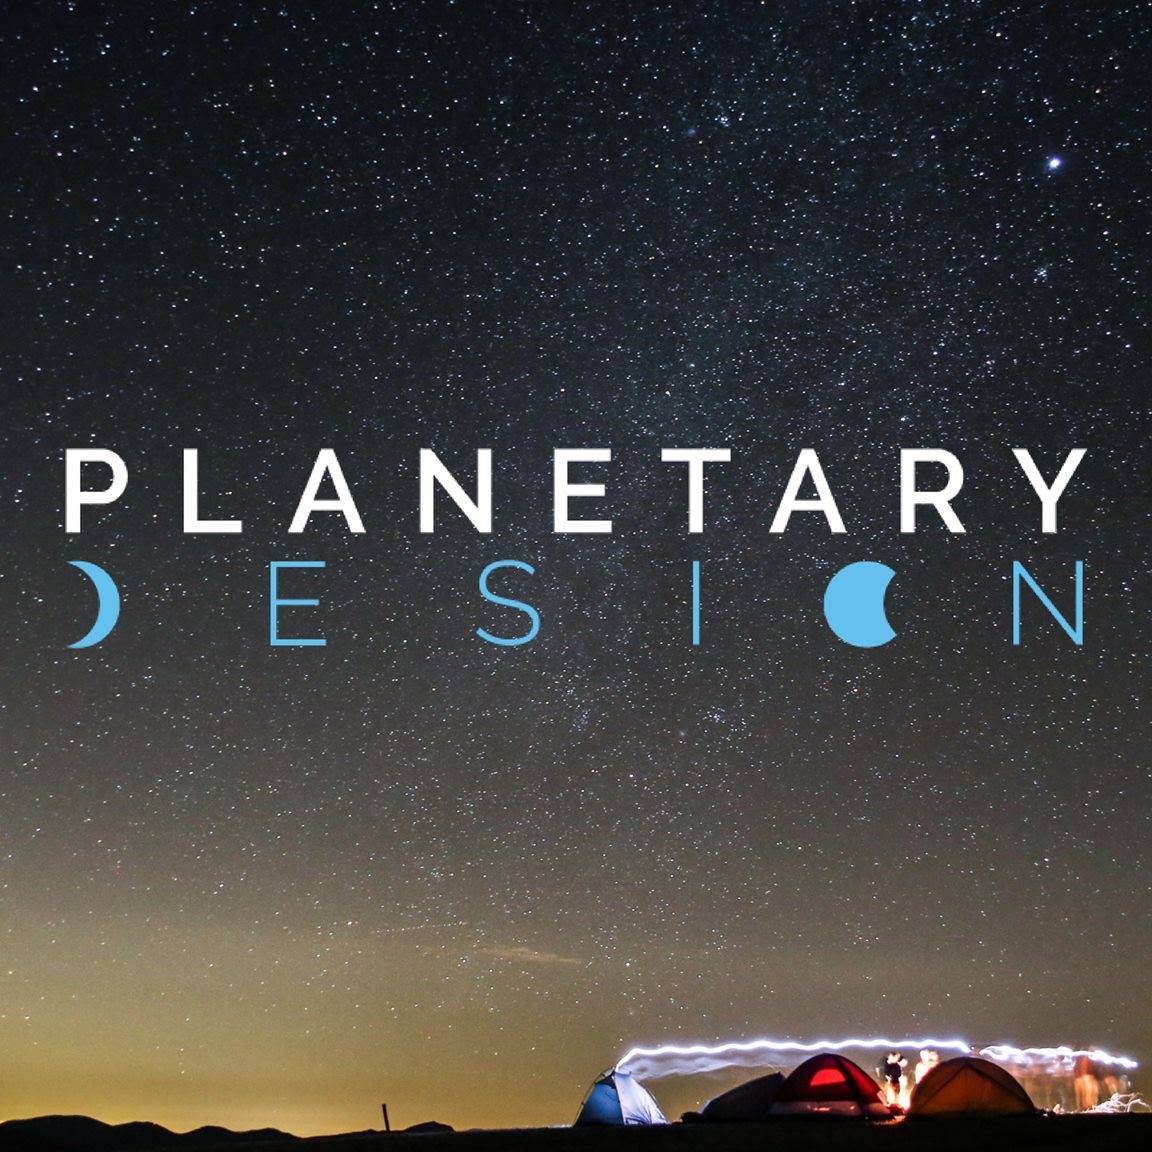 Planetary Design logo